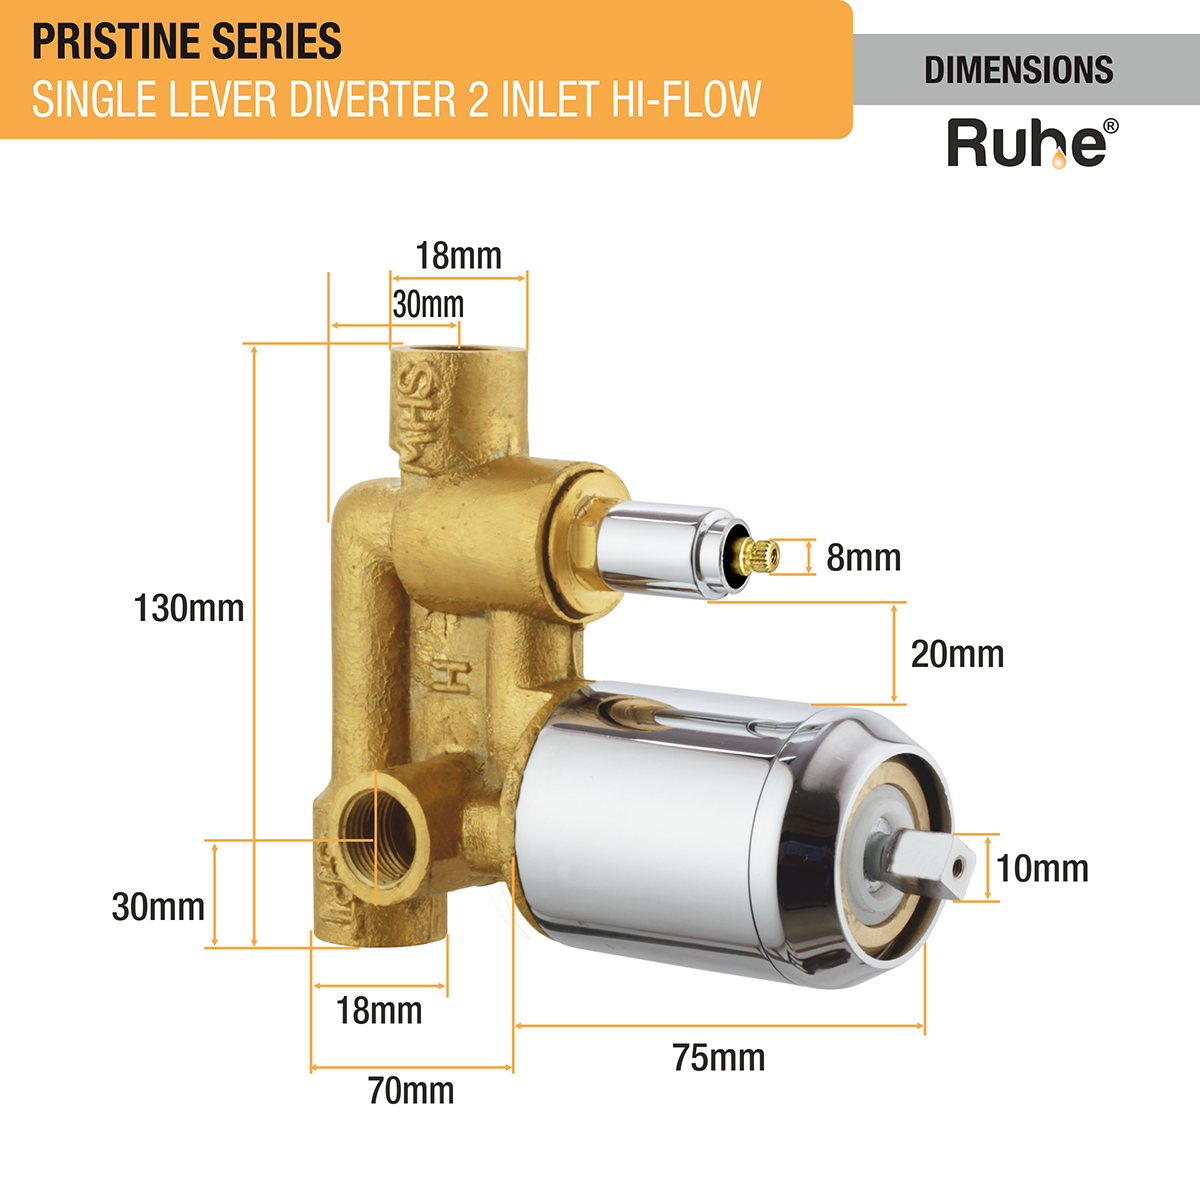 Pristine Single Lever 2-inlet Hi-Flow Diverter (Complete Set) - by Ruhe®